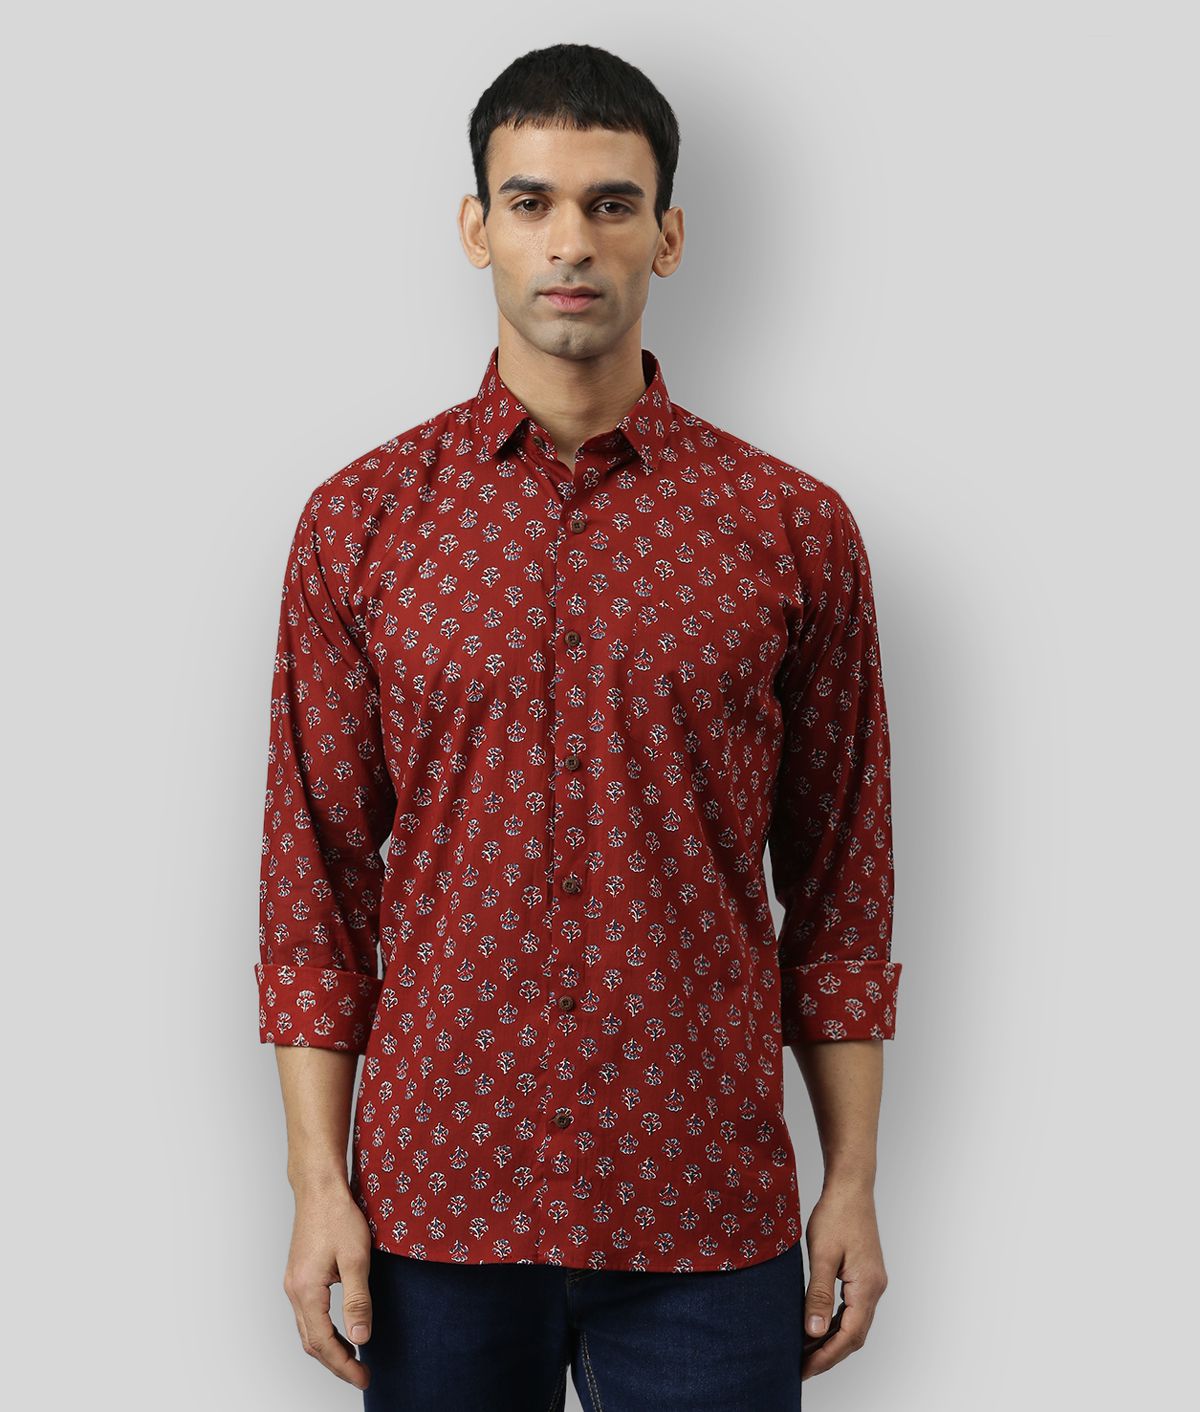     			Millennial Men - Maroon Cotton Regular Fit Men's Casual Shirt (Pack of 1 )